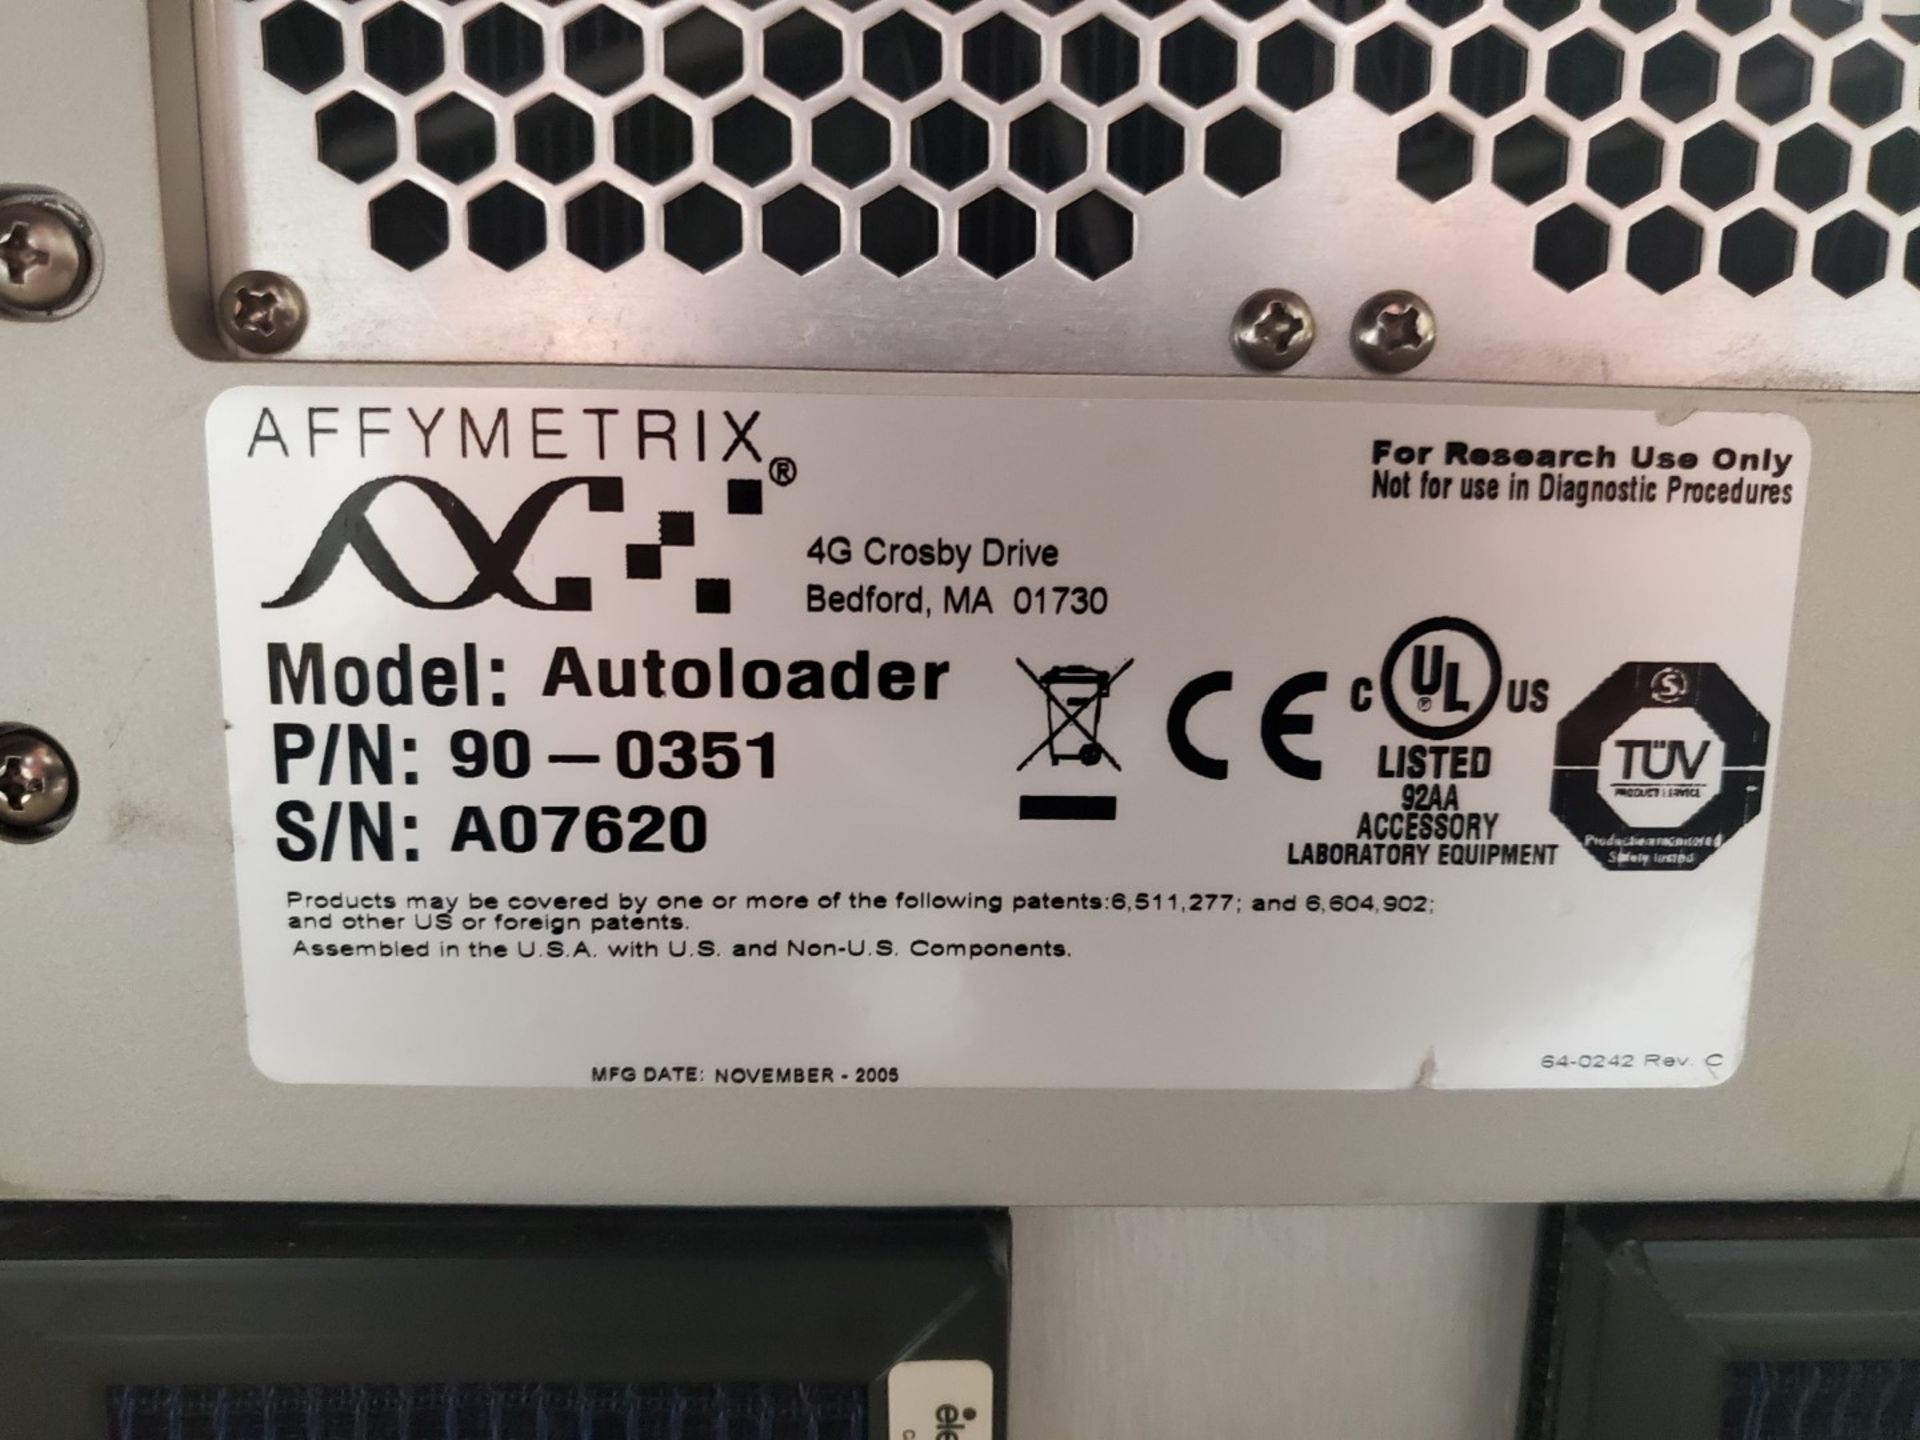 Affymetrix Autoloader and GeneChip Scanner, model 3000 7G - Image 2 of 4